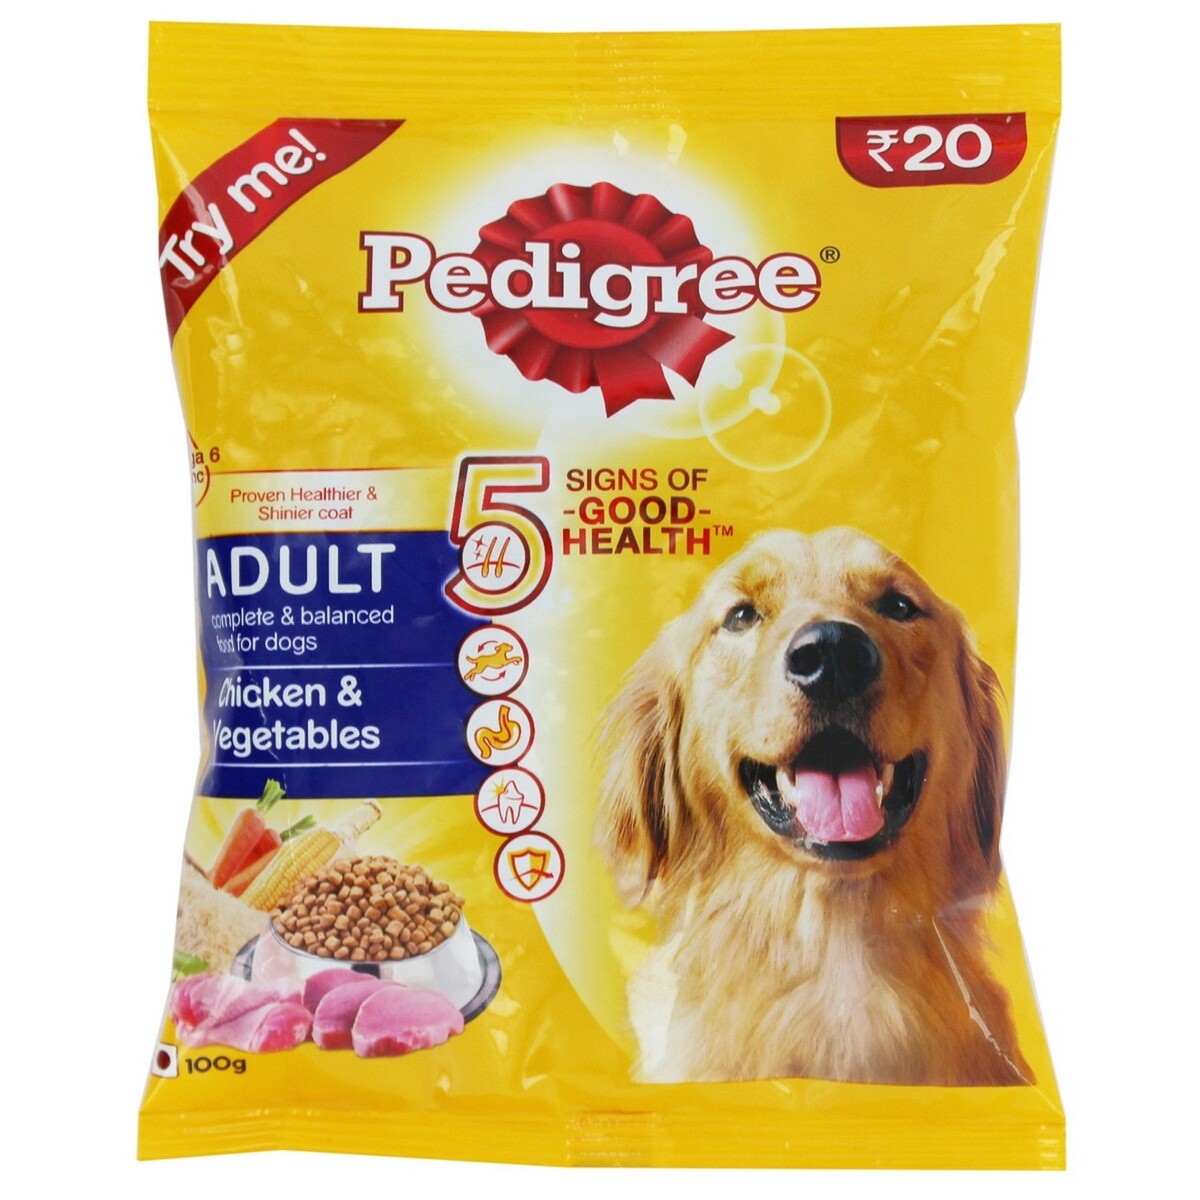 Buy Pedigree Dog Food Chicken & Vegetables Adult 100g